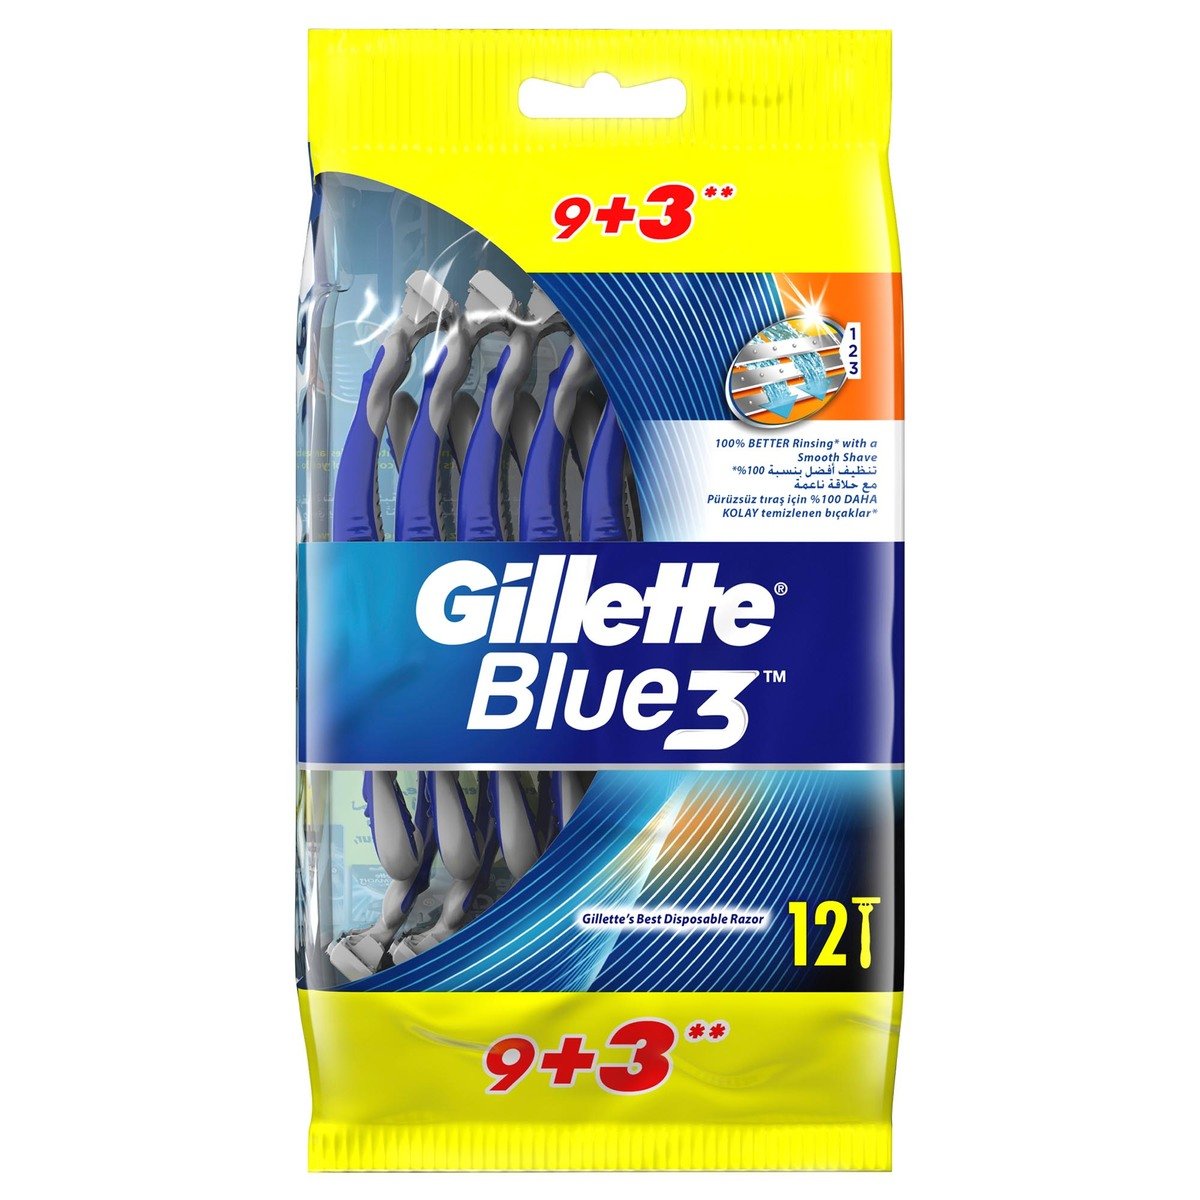 Gillette Blue 3 Disposable Razor 9 pcs + 3 pcs